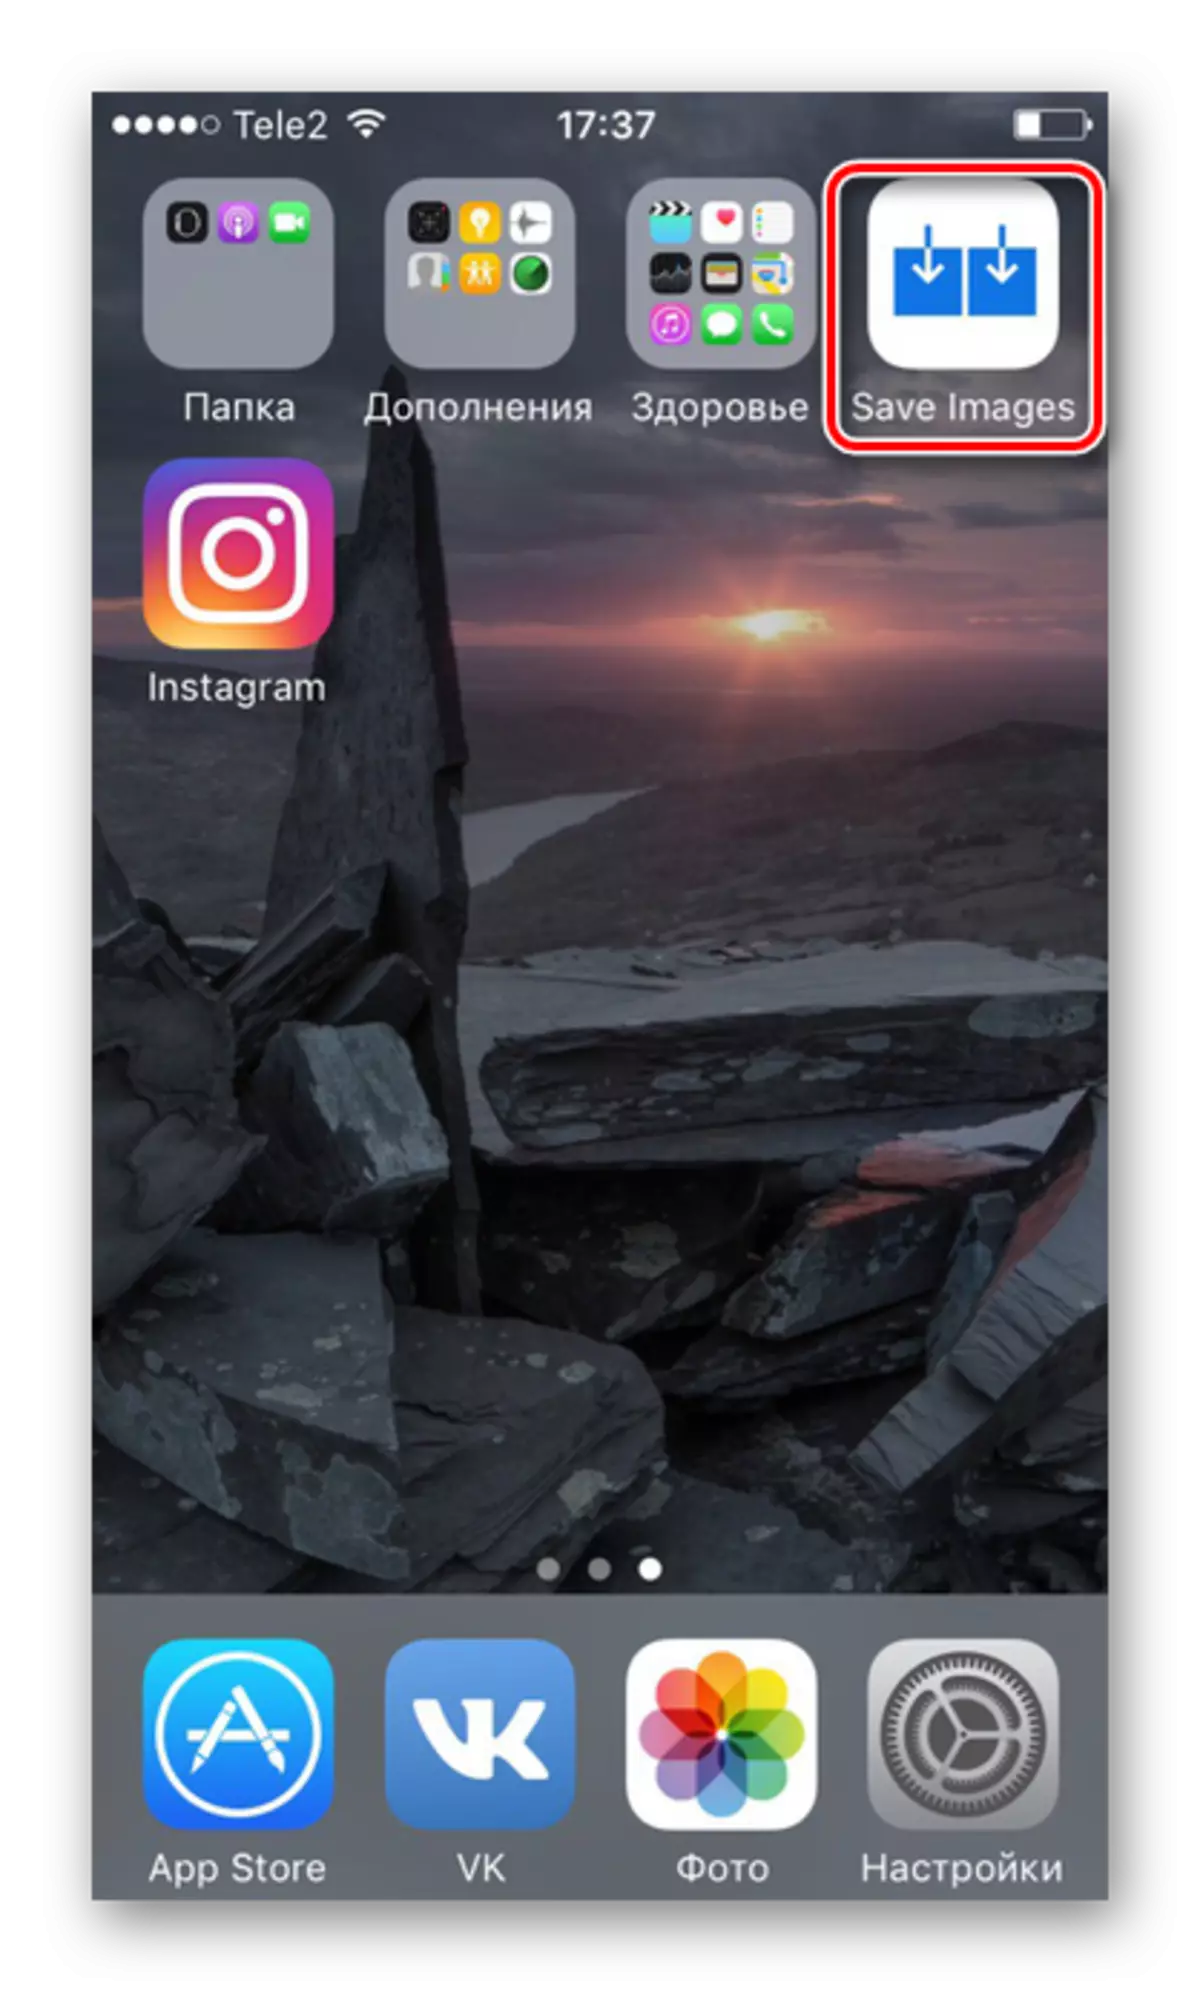 Инстаграмдан iPhone үчүн Instagram сүрөтүн сактап калуу үчүн сагындым сүрөттөр колдонмосу менен жүктөлдү